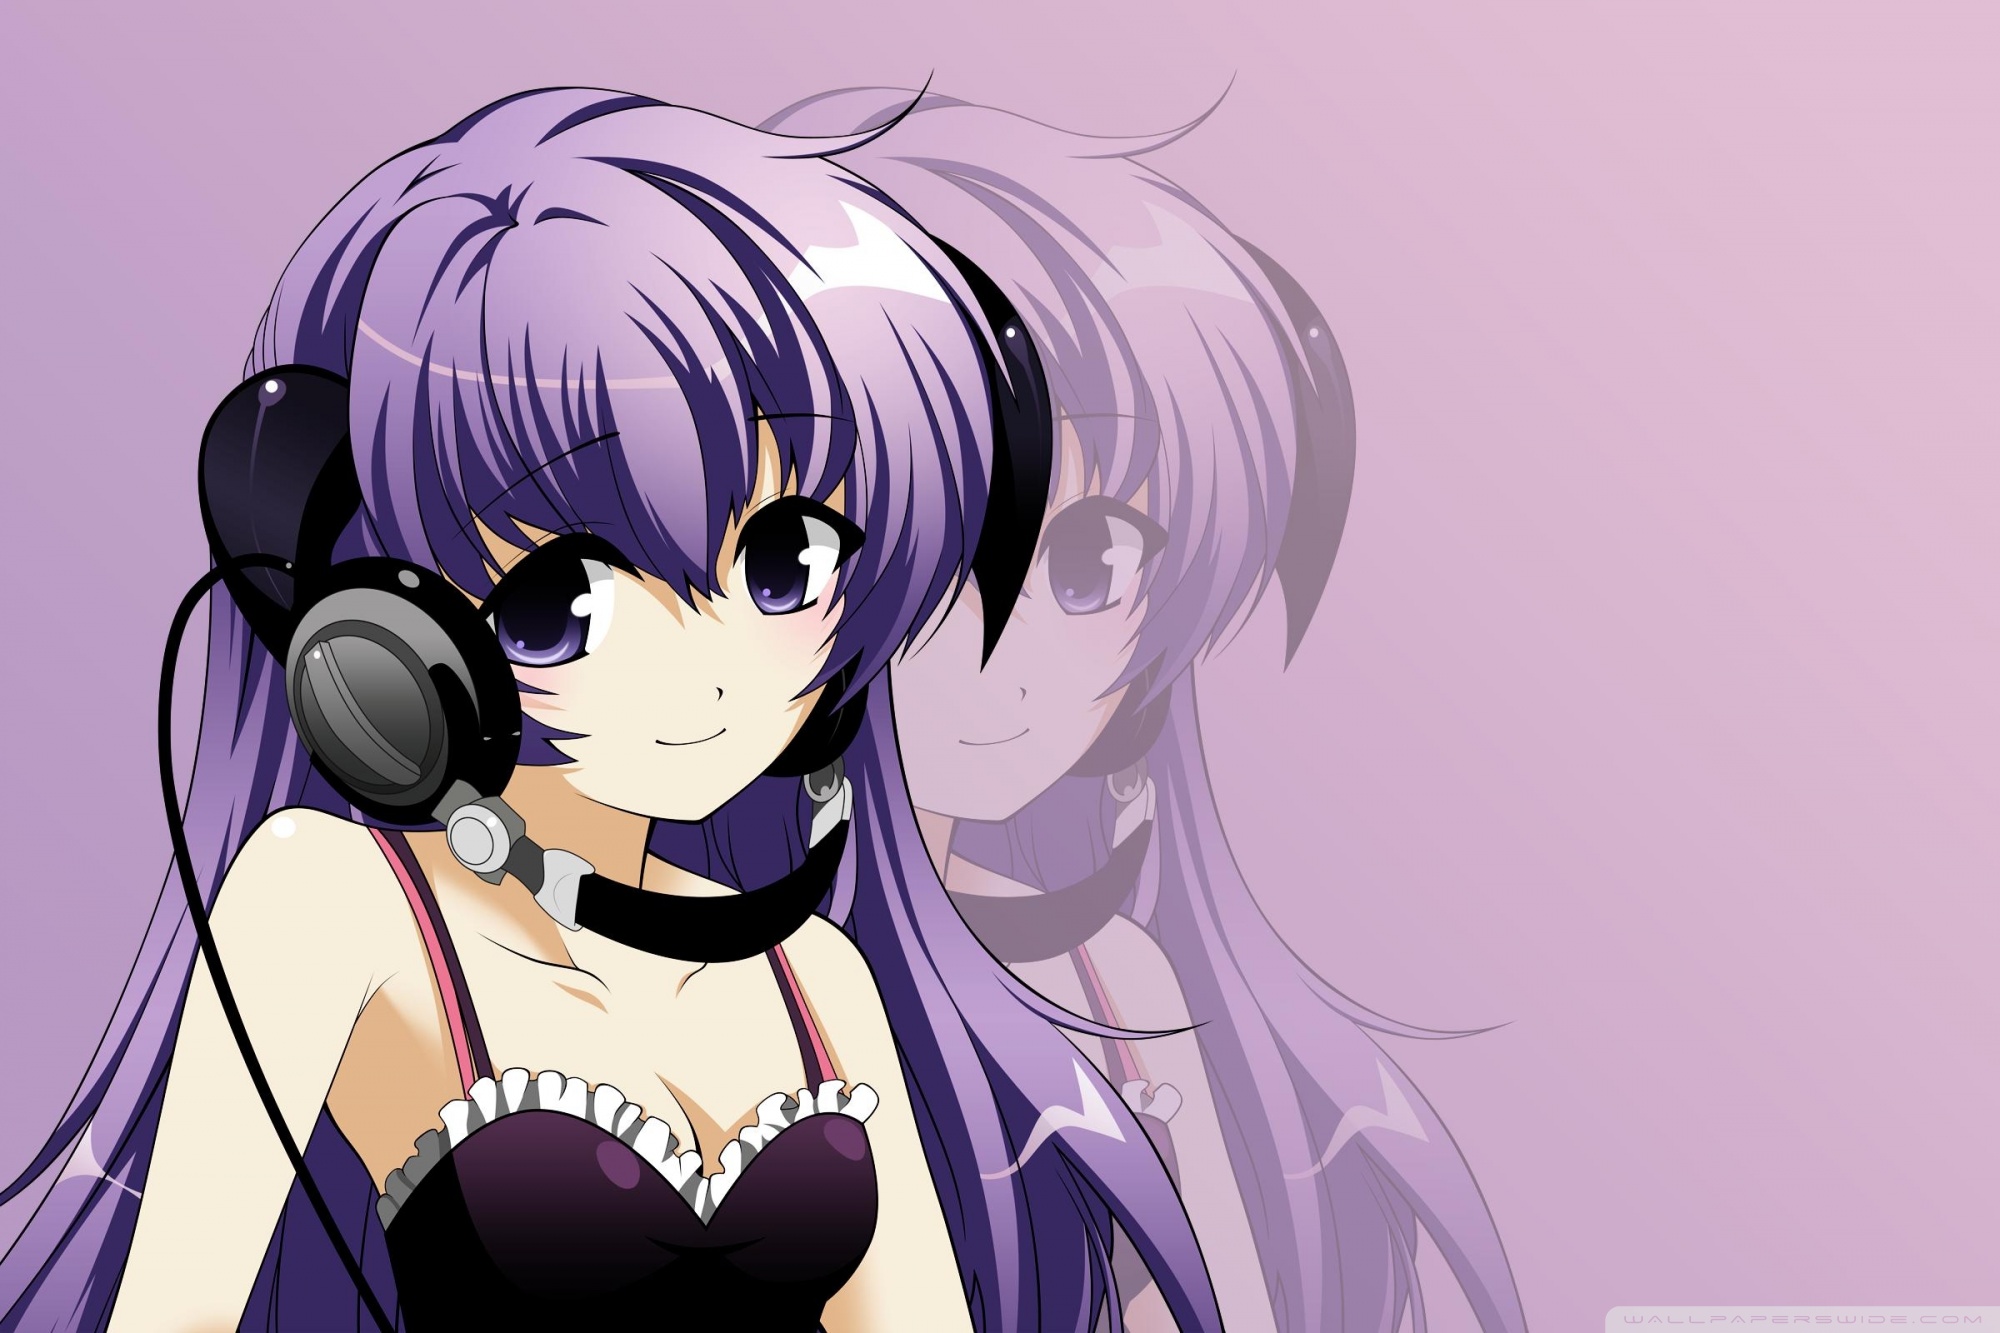 Anime Girl Listening Music Ultra HD Desktop Background Wallpaper for 4K UHD TV, Tablet